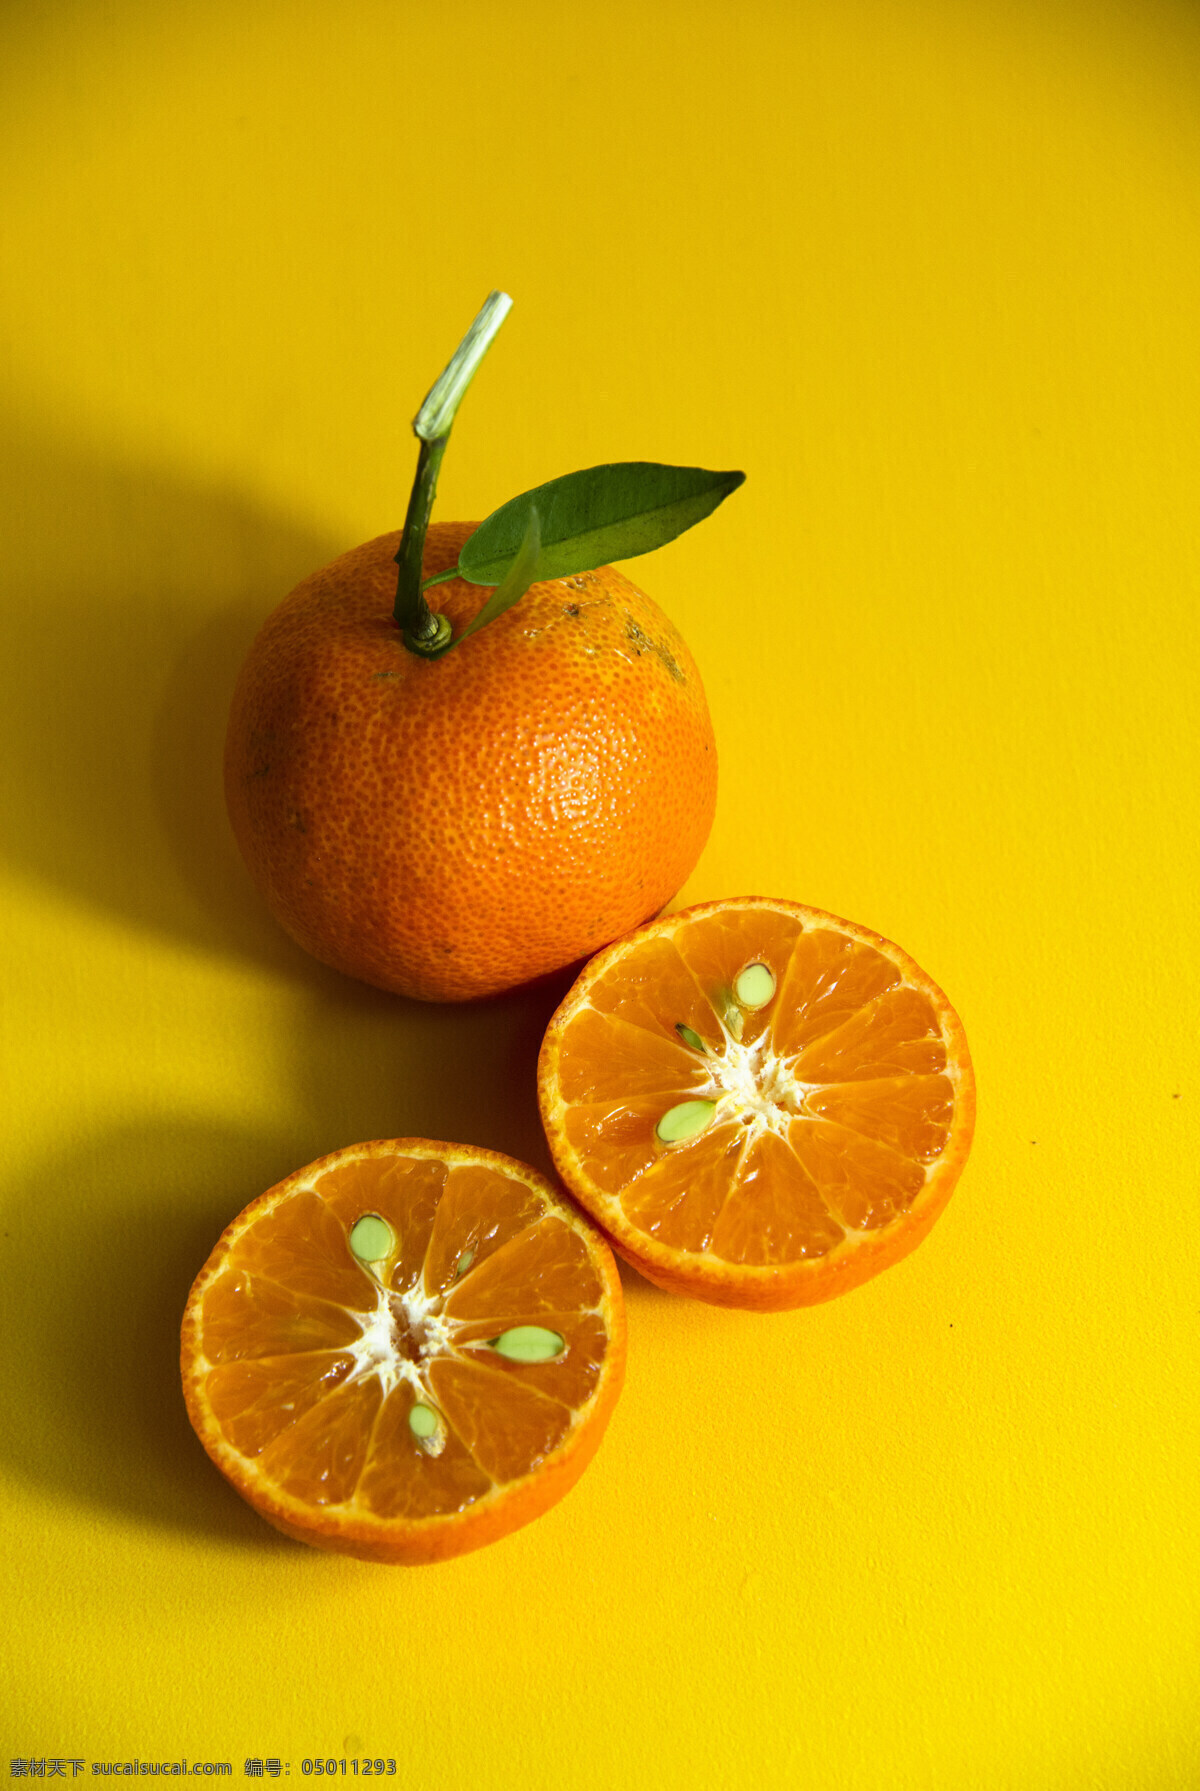 橘子 创意 广告摄影 素材图片 柑橘 橙 水果素材 广告素材 宣传单页素材 画册素材 创意摄影 平面设计 水果高清壁纸 黄色背景 黄的底板 网页素材 生物世界 水果